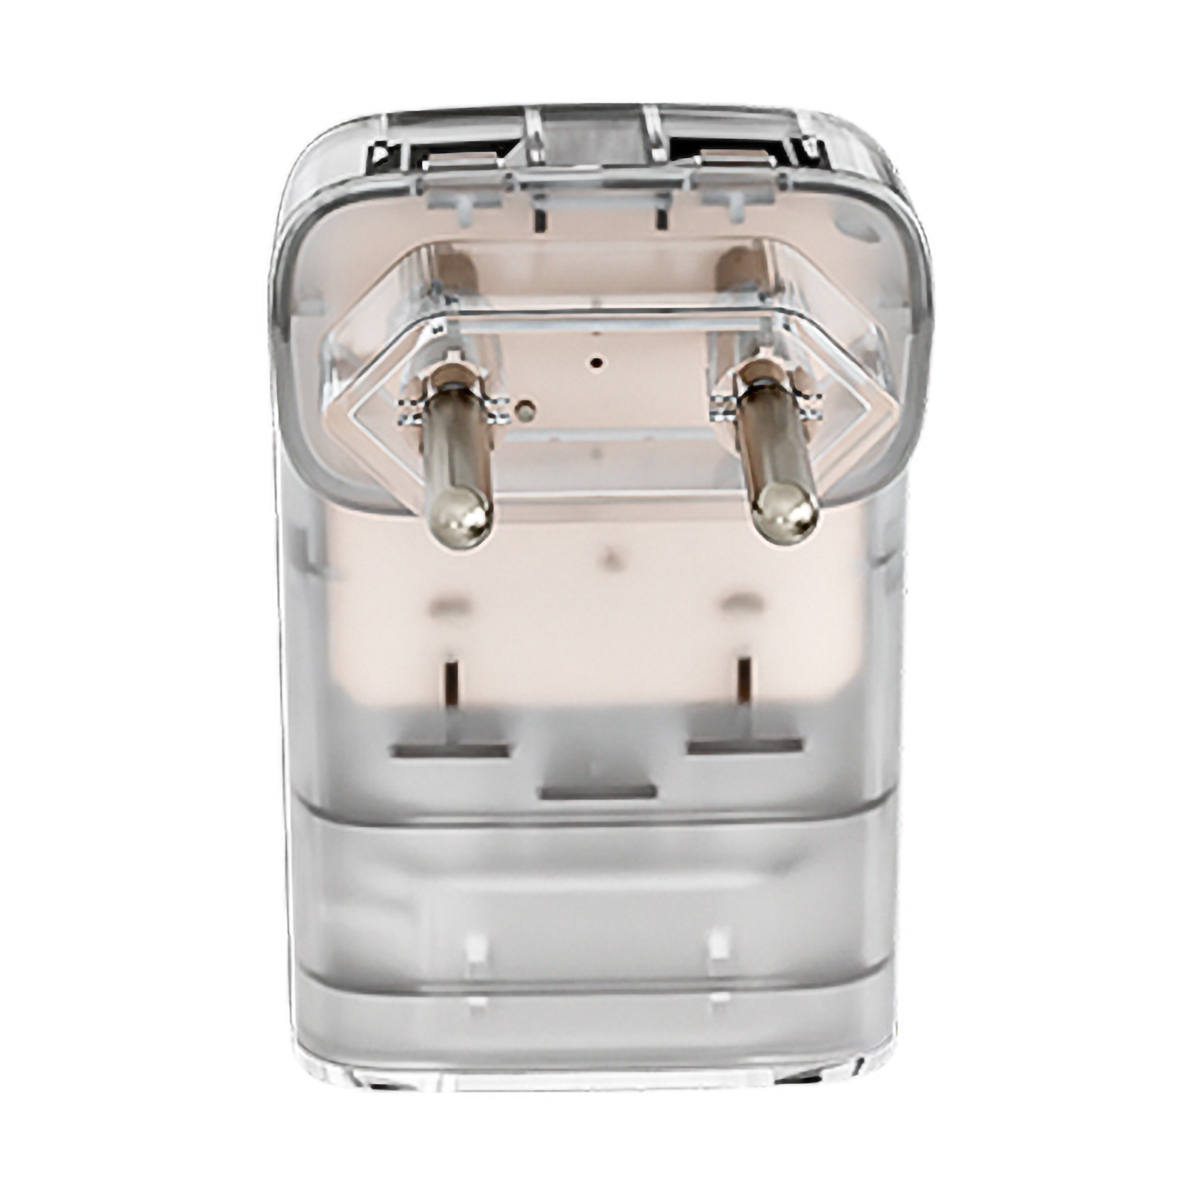 iClamper Pocket Fit 2 Pinos 20A DPS Proteção contra Raios e Surtos Elétricos Mesmo Sem Aterramento Clamper Transparente